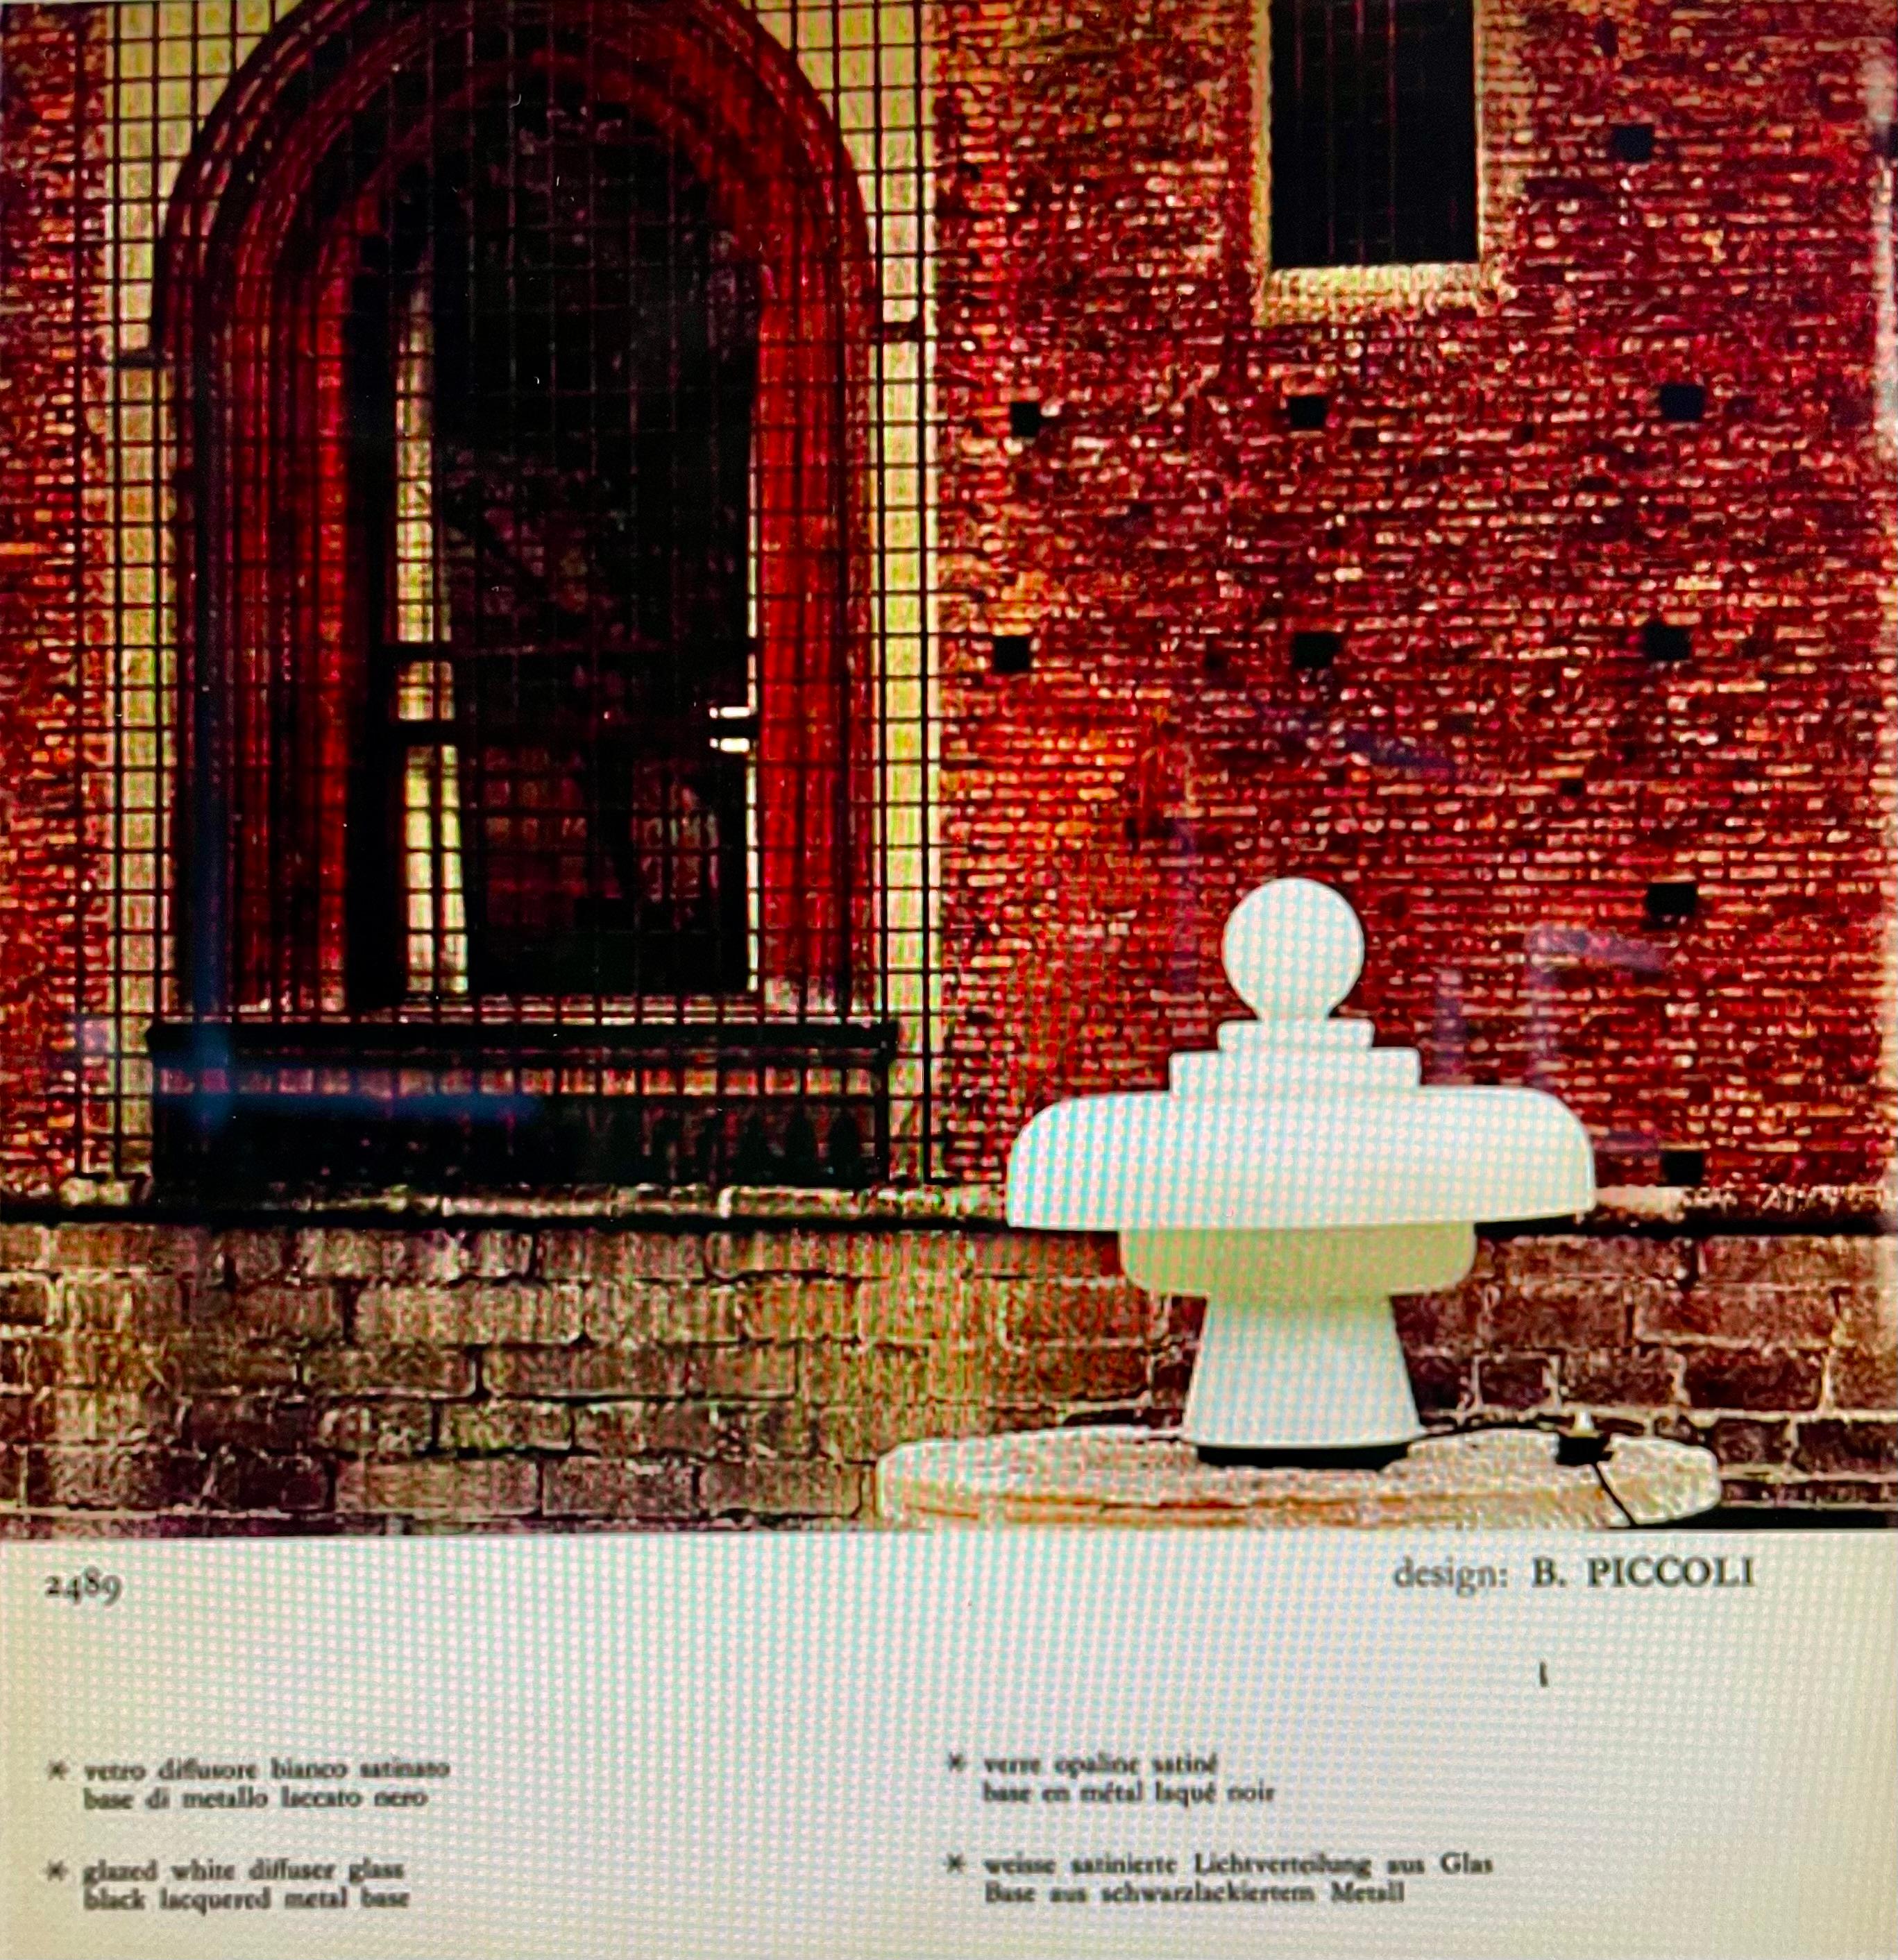 Lampe de table conçue par Bobo Piccoli. Italie, Fontana Arte, 1968.

Grande lampe de table, connue sous le nom de 